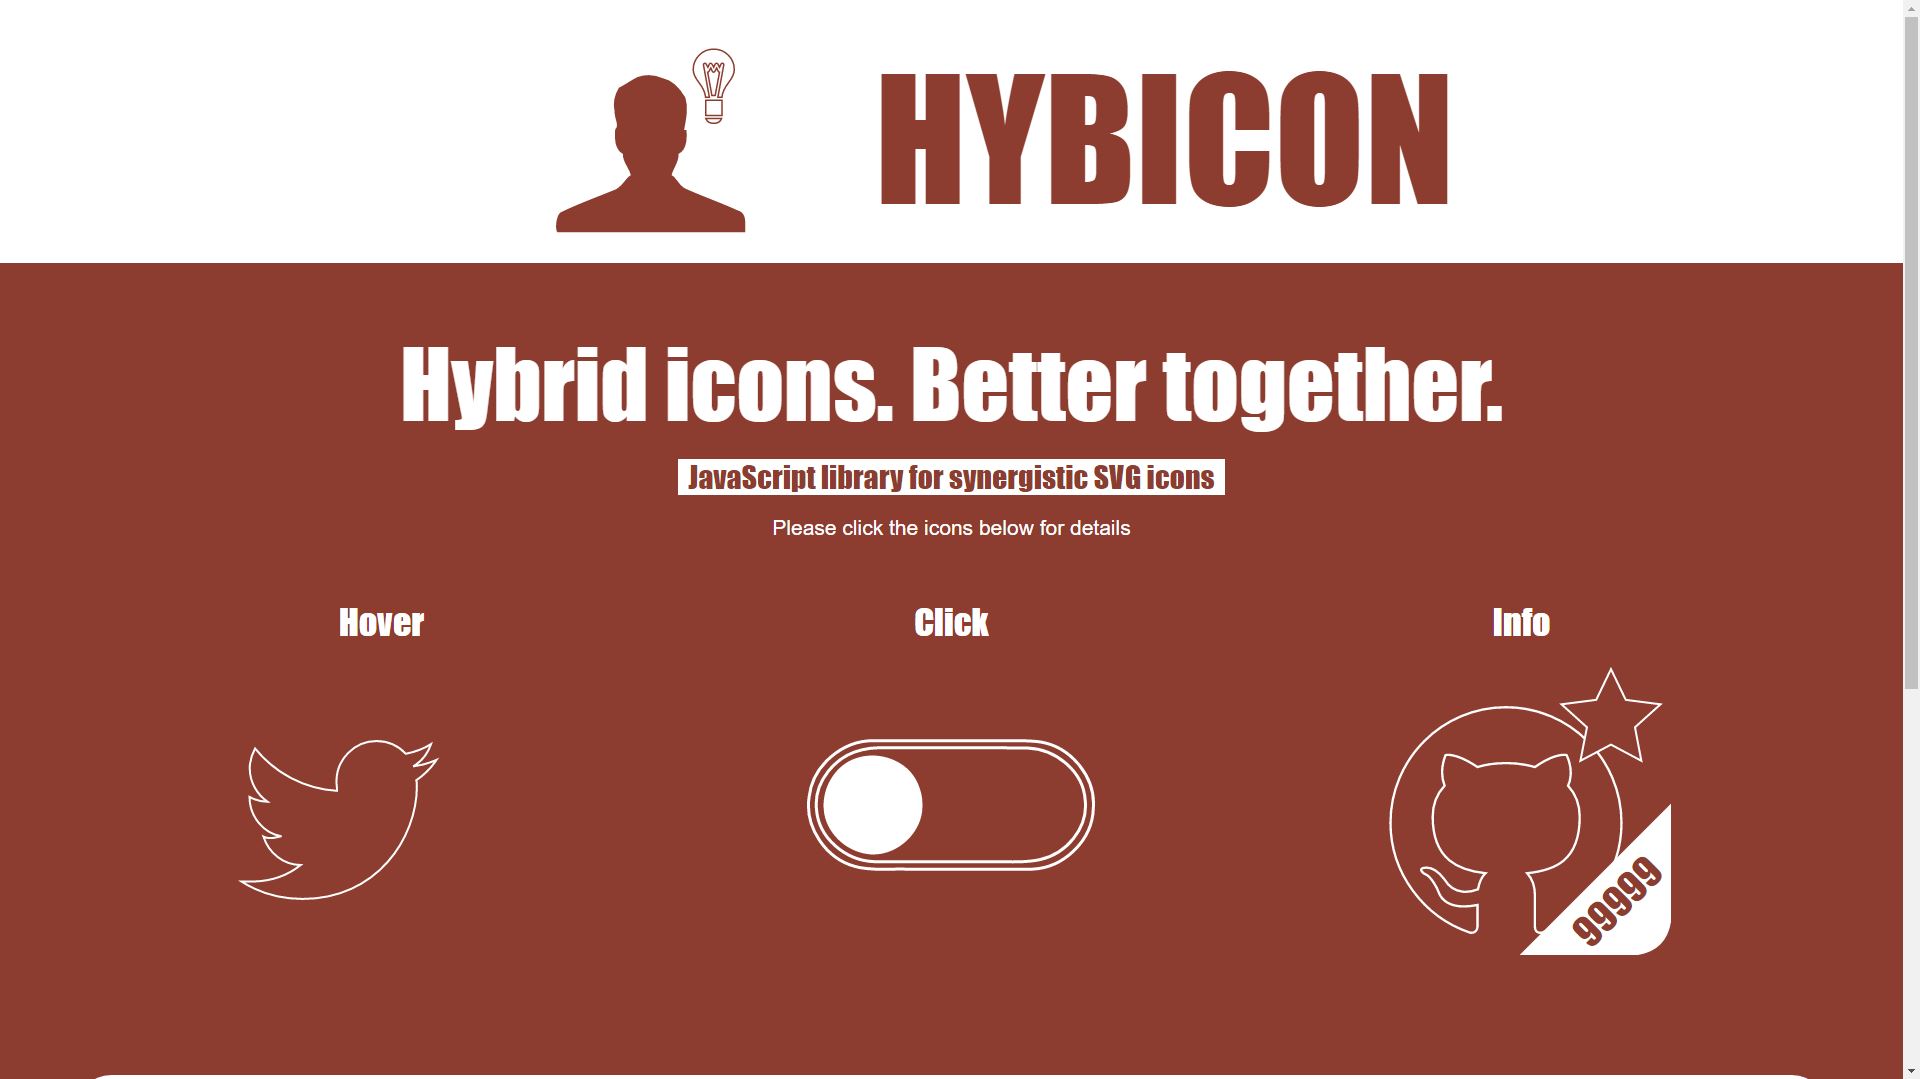 hybicon.js